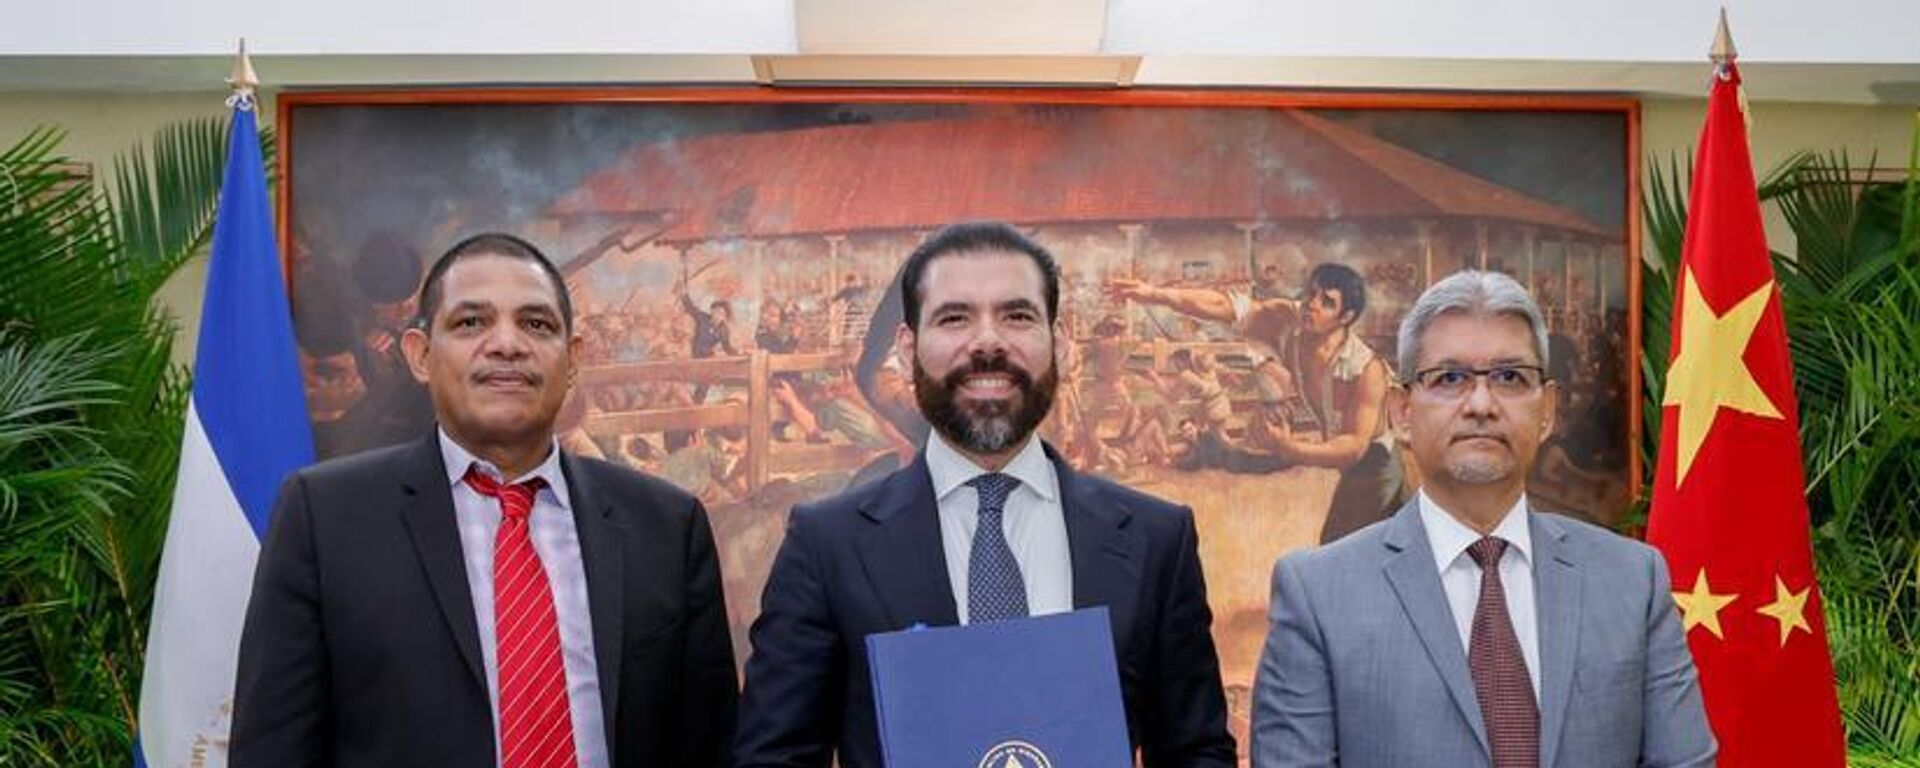 El Tratado de Libre Comercio entre Nicaragua y China entrará en vigor en enero de 2024.  - Sputnik Mundo, 1920, 31.08.2023